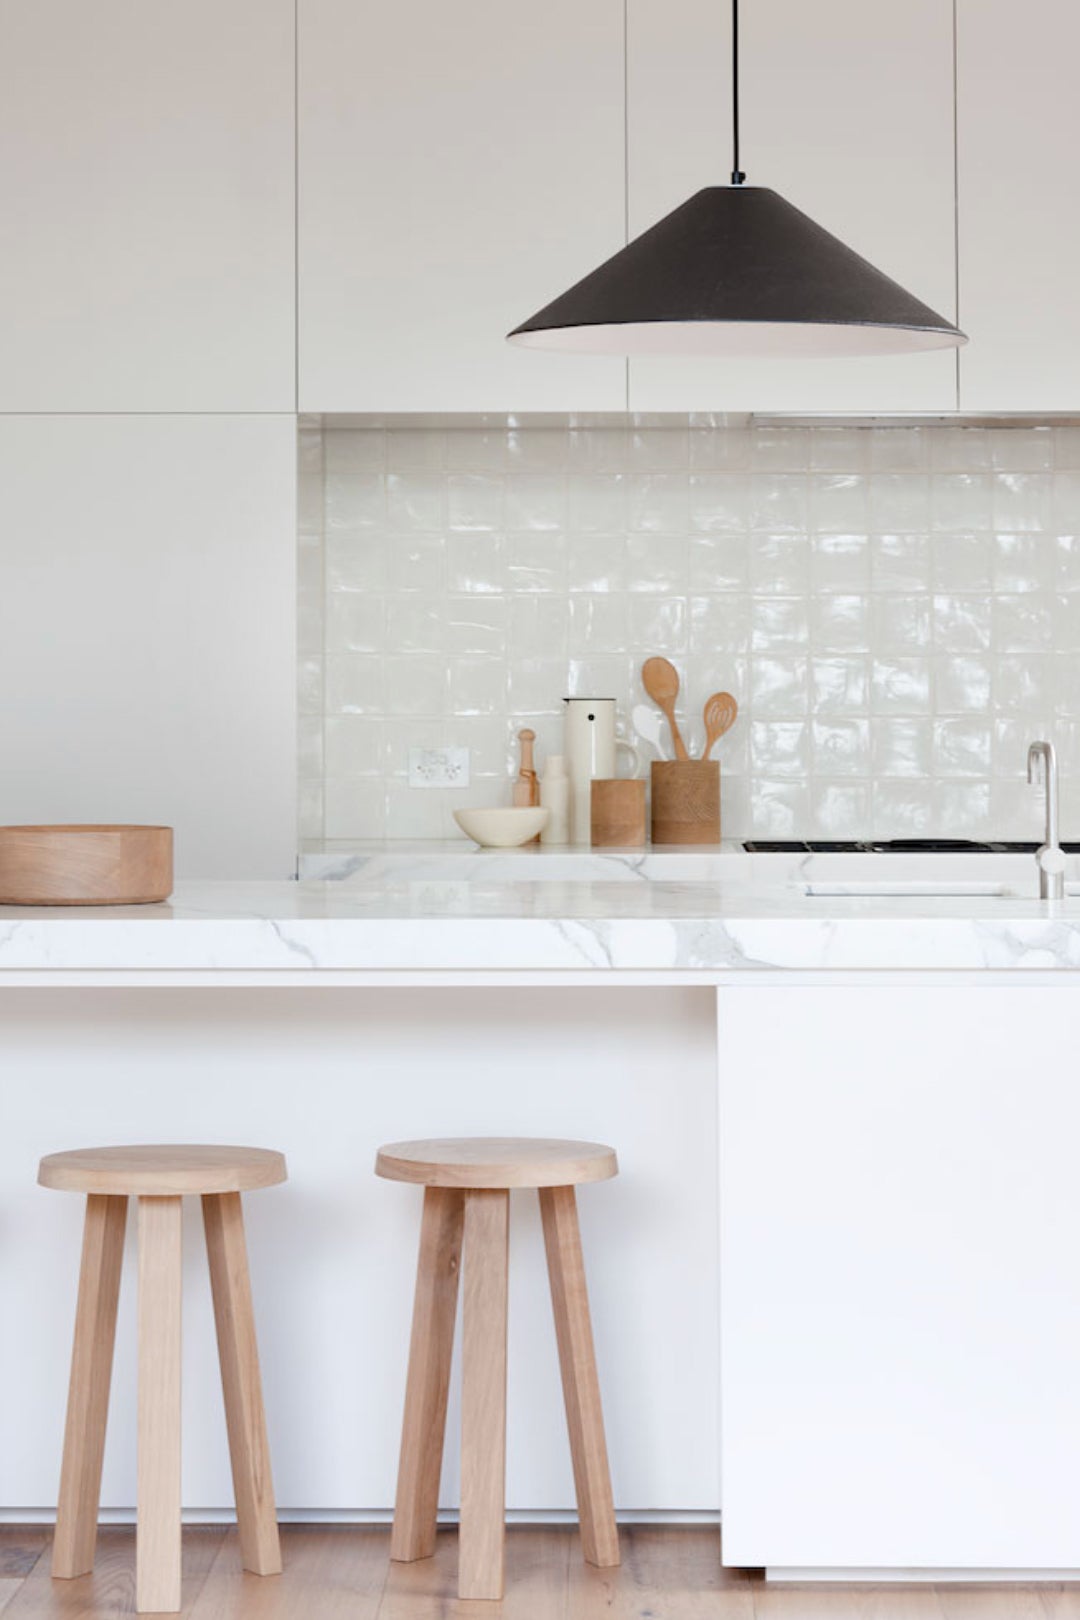 zellige white tiles in kitchen nook